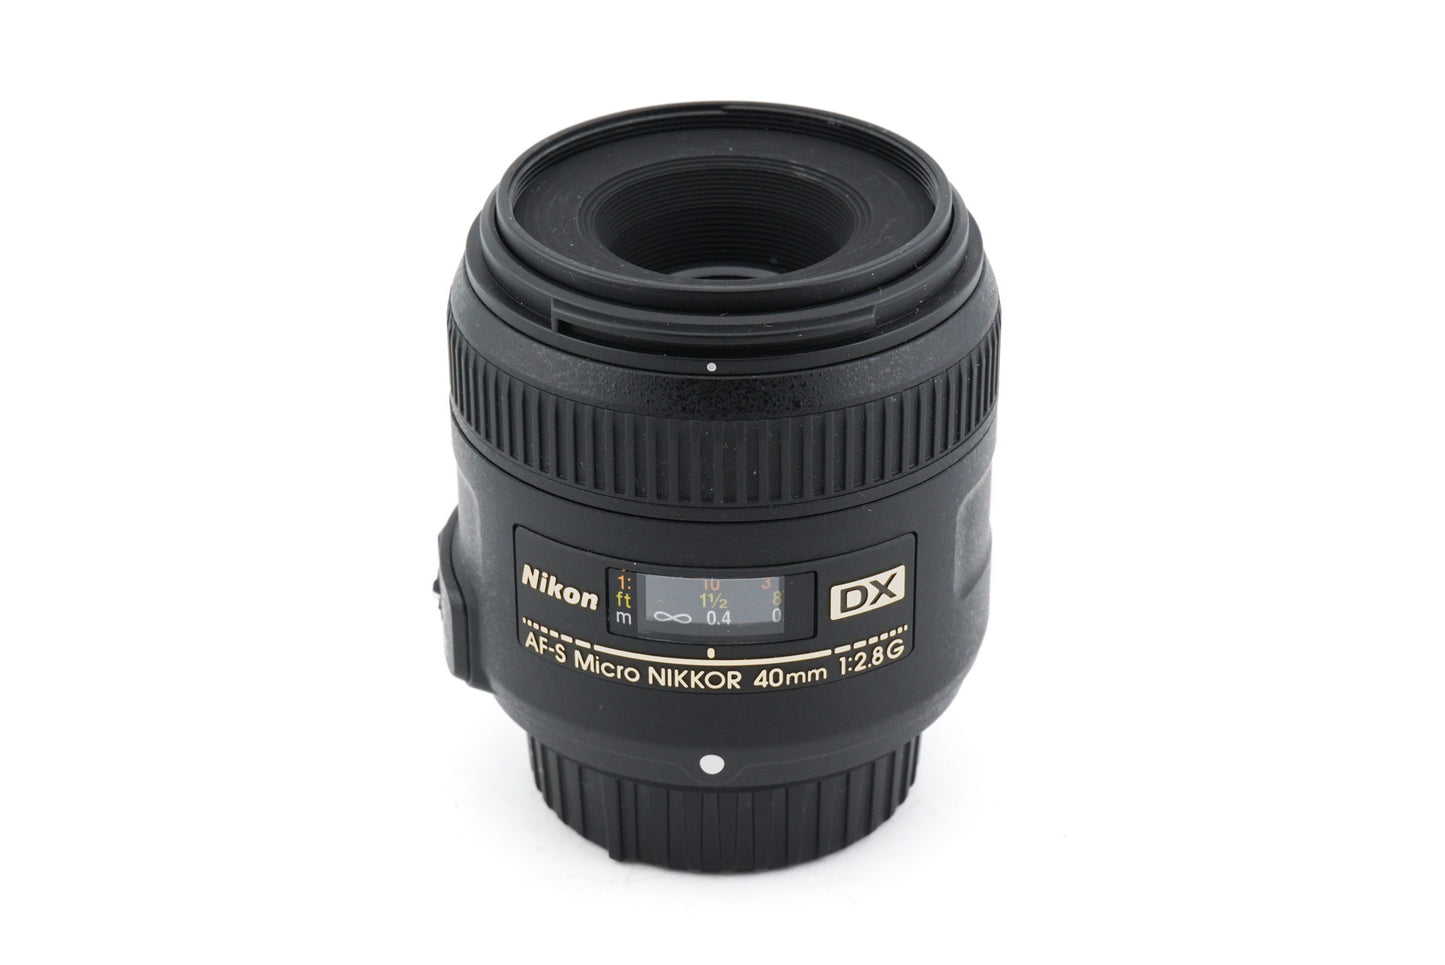 Nikon 40mm f2.8 G AF-S Micro Nikkor DX - Lens